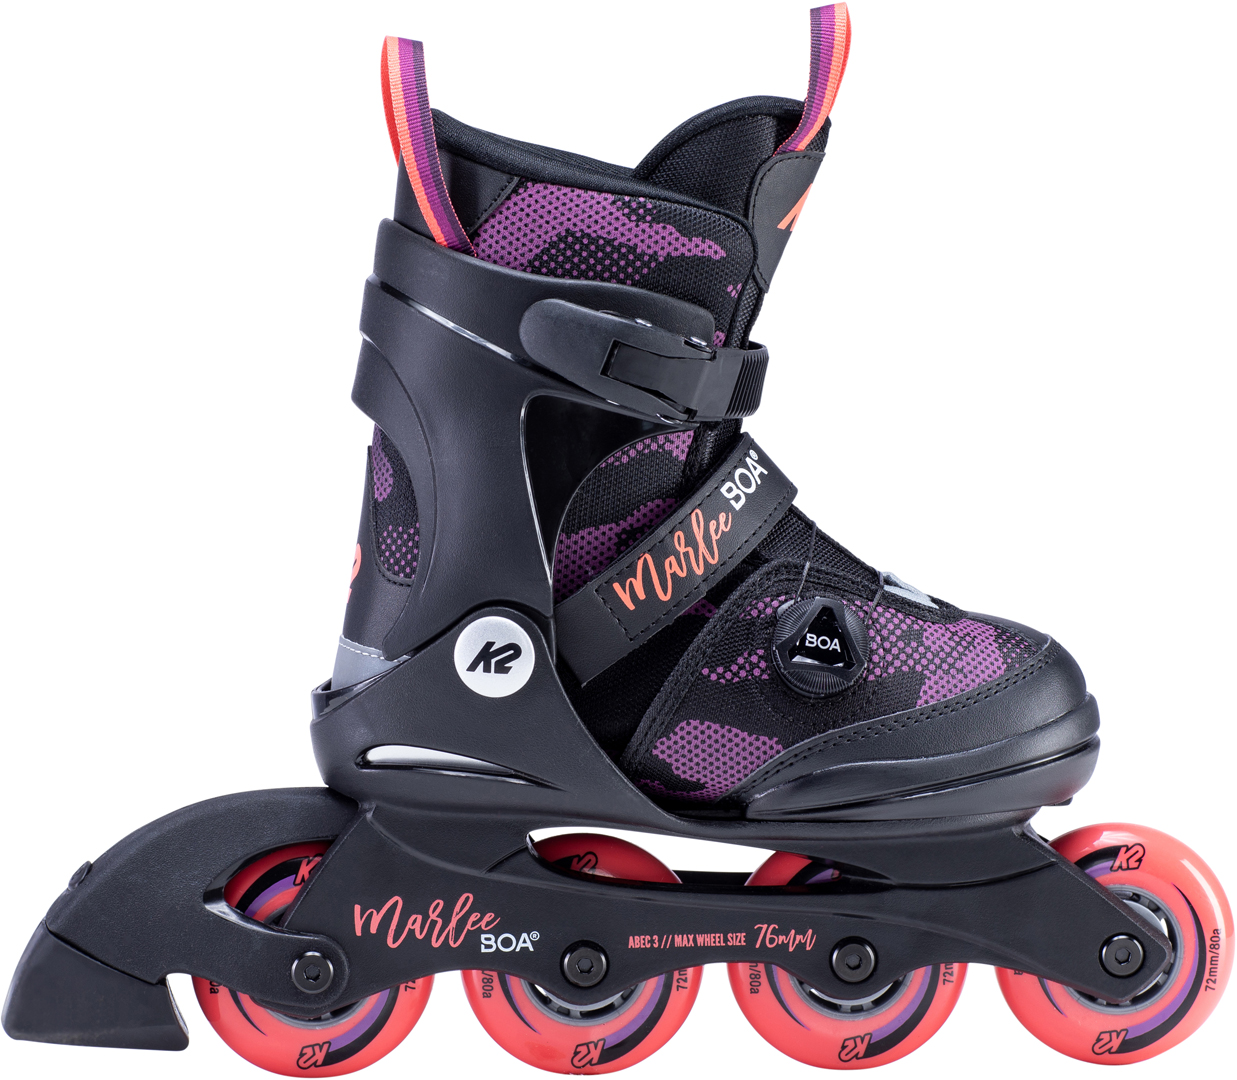 K2 Marlee Boa Kids Inline Skates Kinder Inliner black 30E0202 Roller Skating 